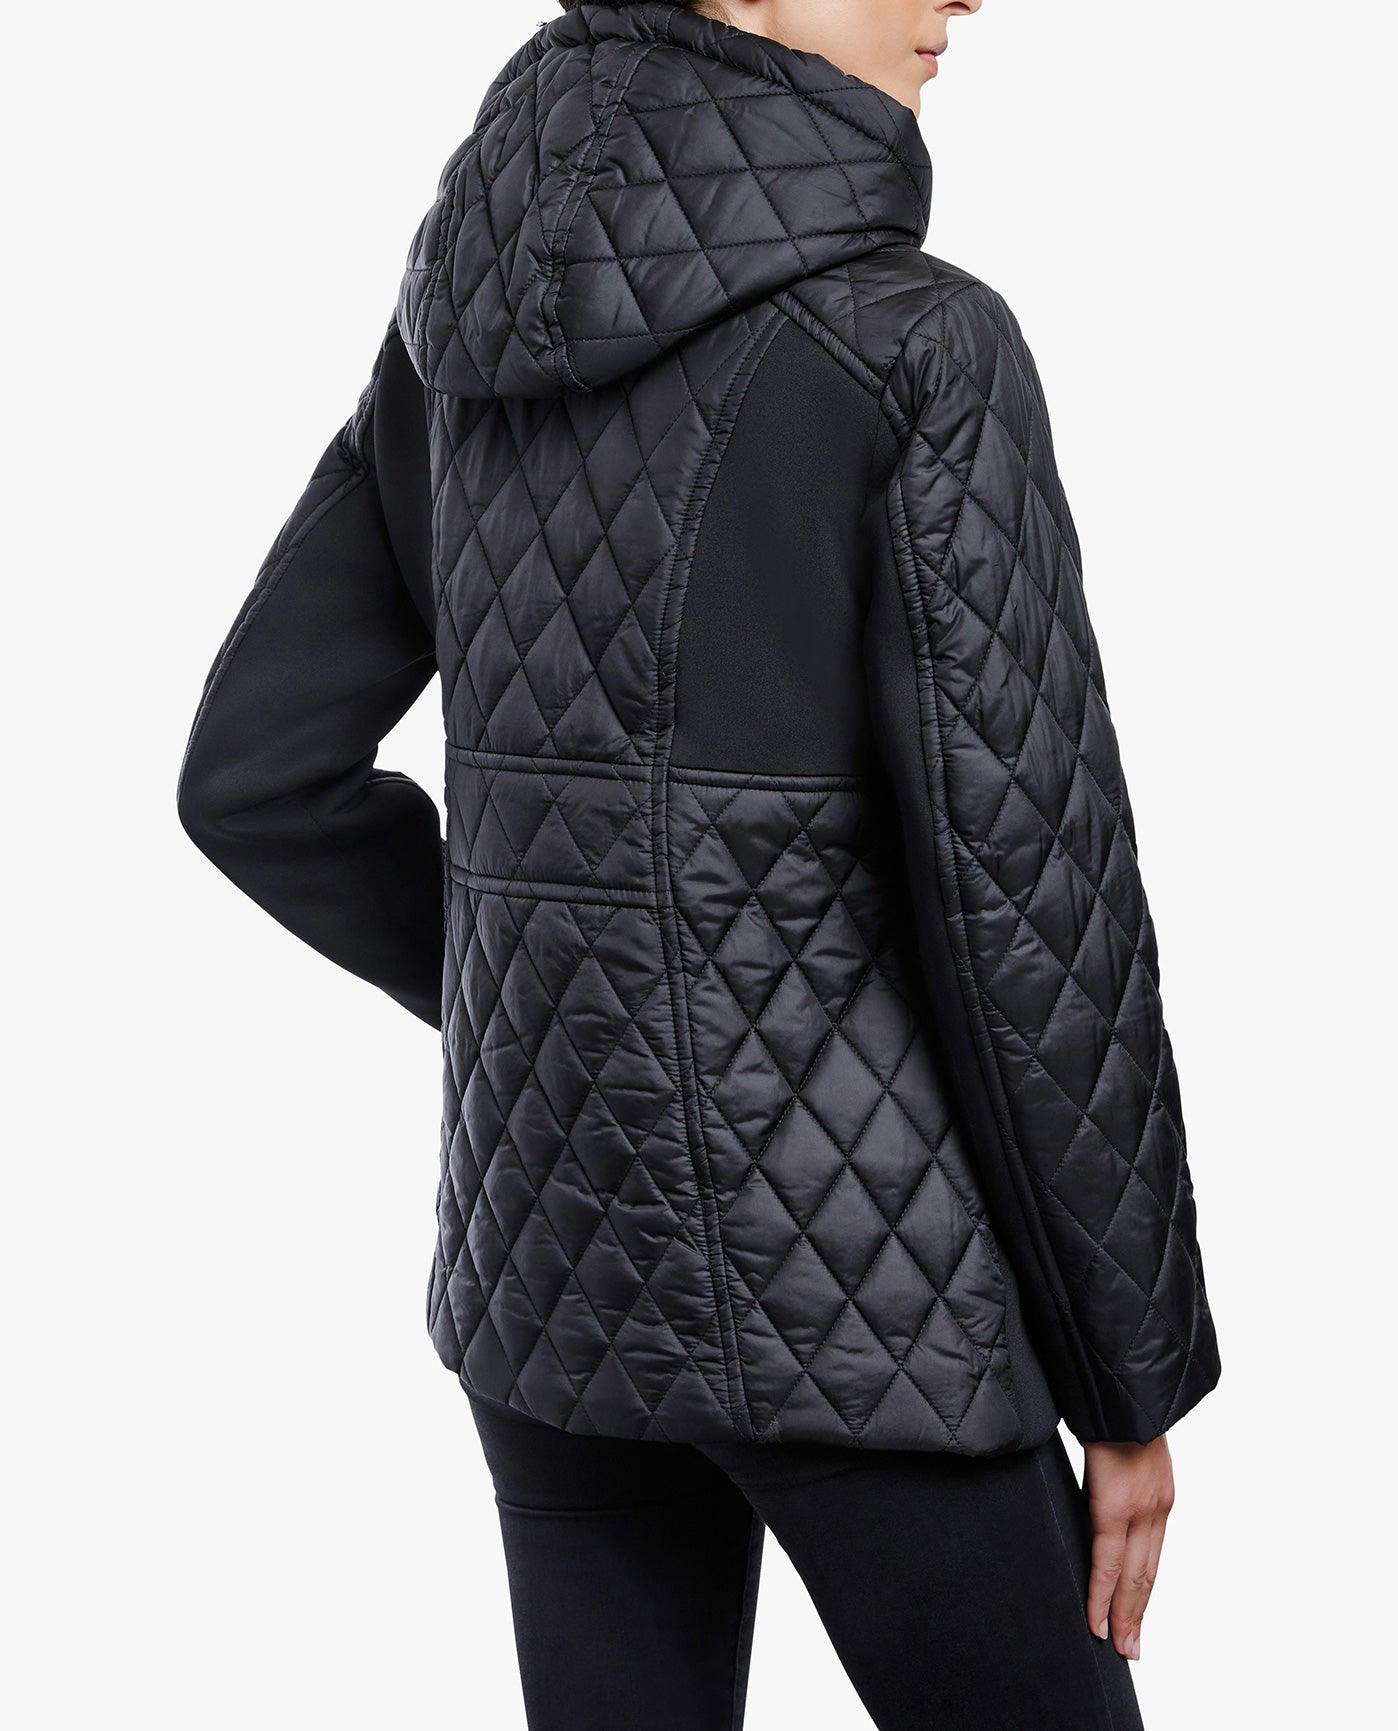 Buy Women's Zip Up Cotton Light Hoodie Jacket (L, Black) at Amazon.in